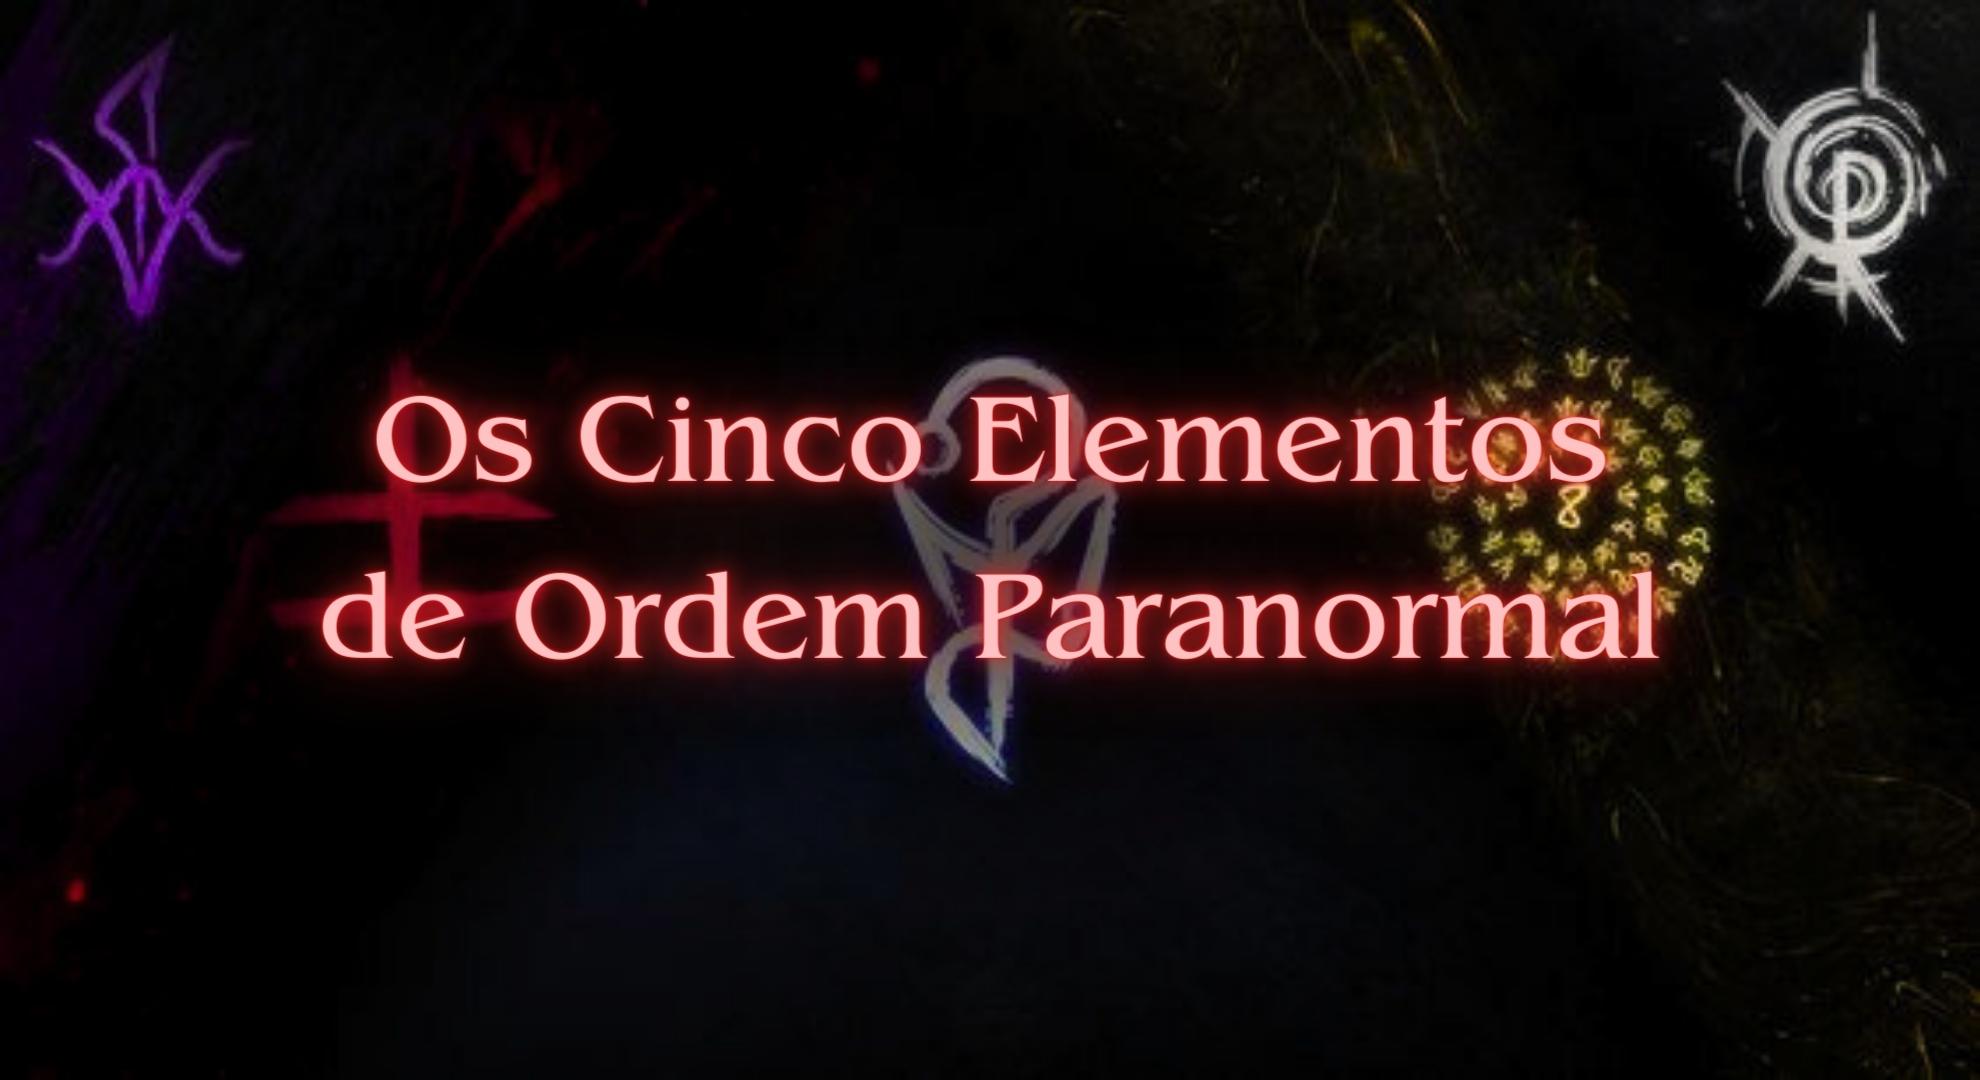 Os Elementos de Ordem Paranormal